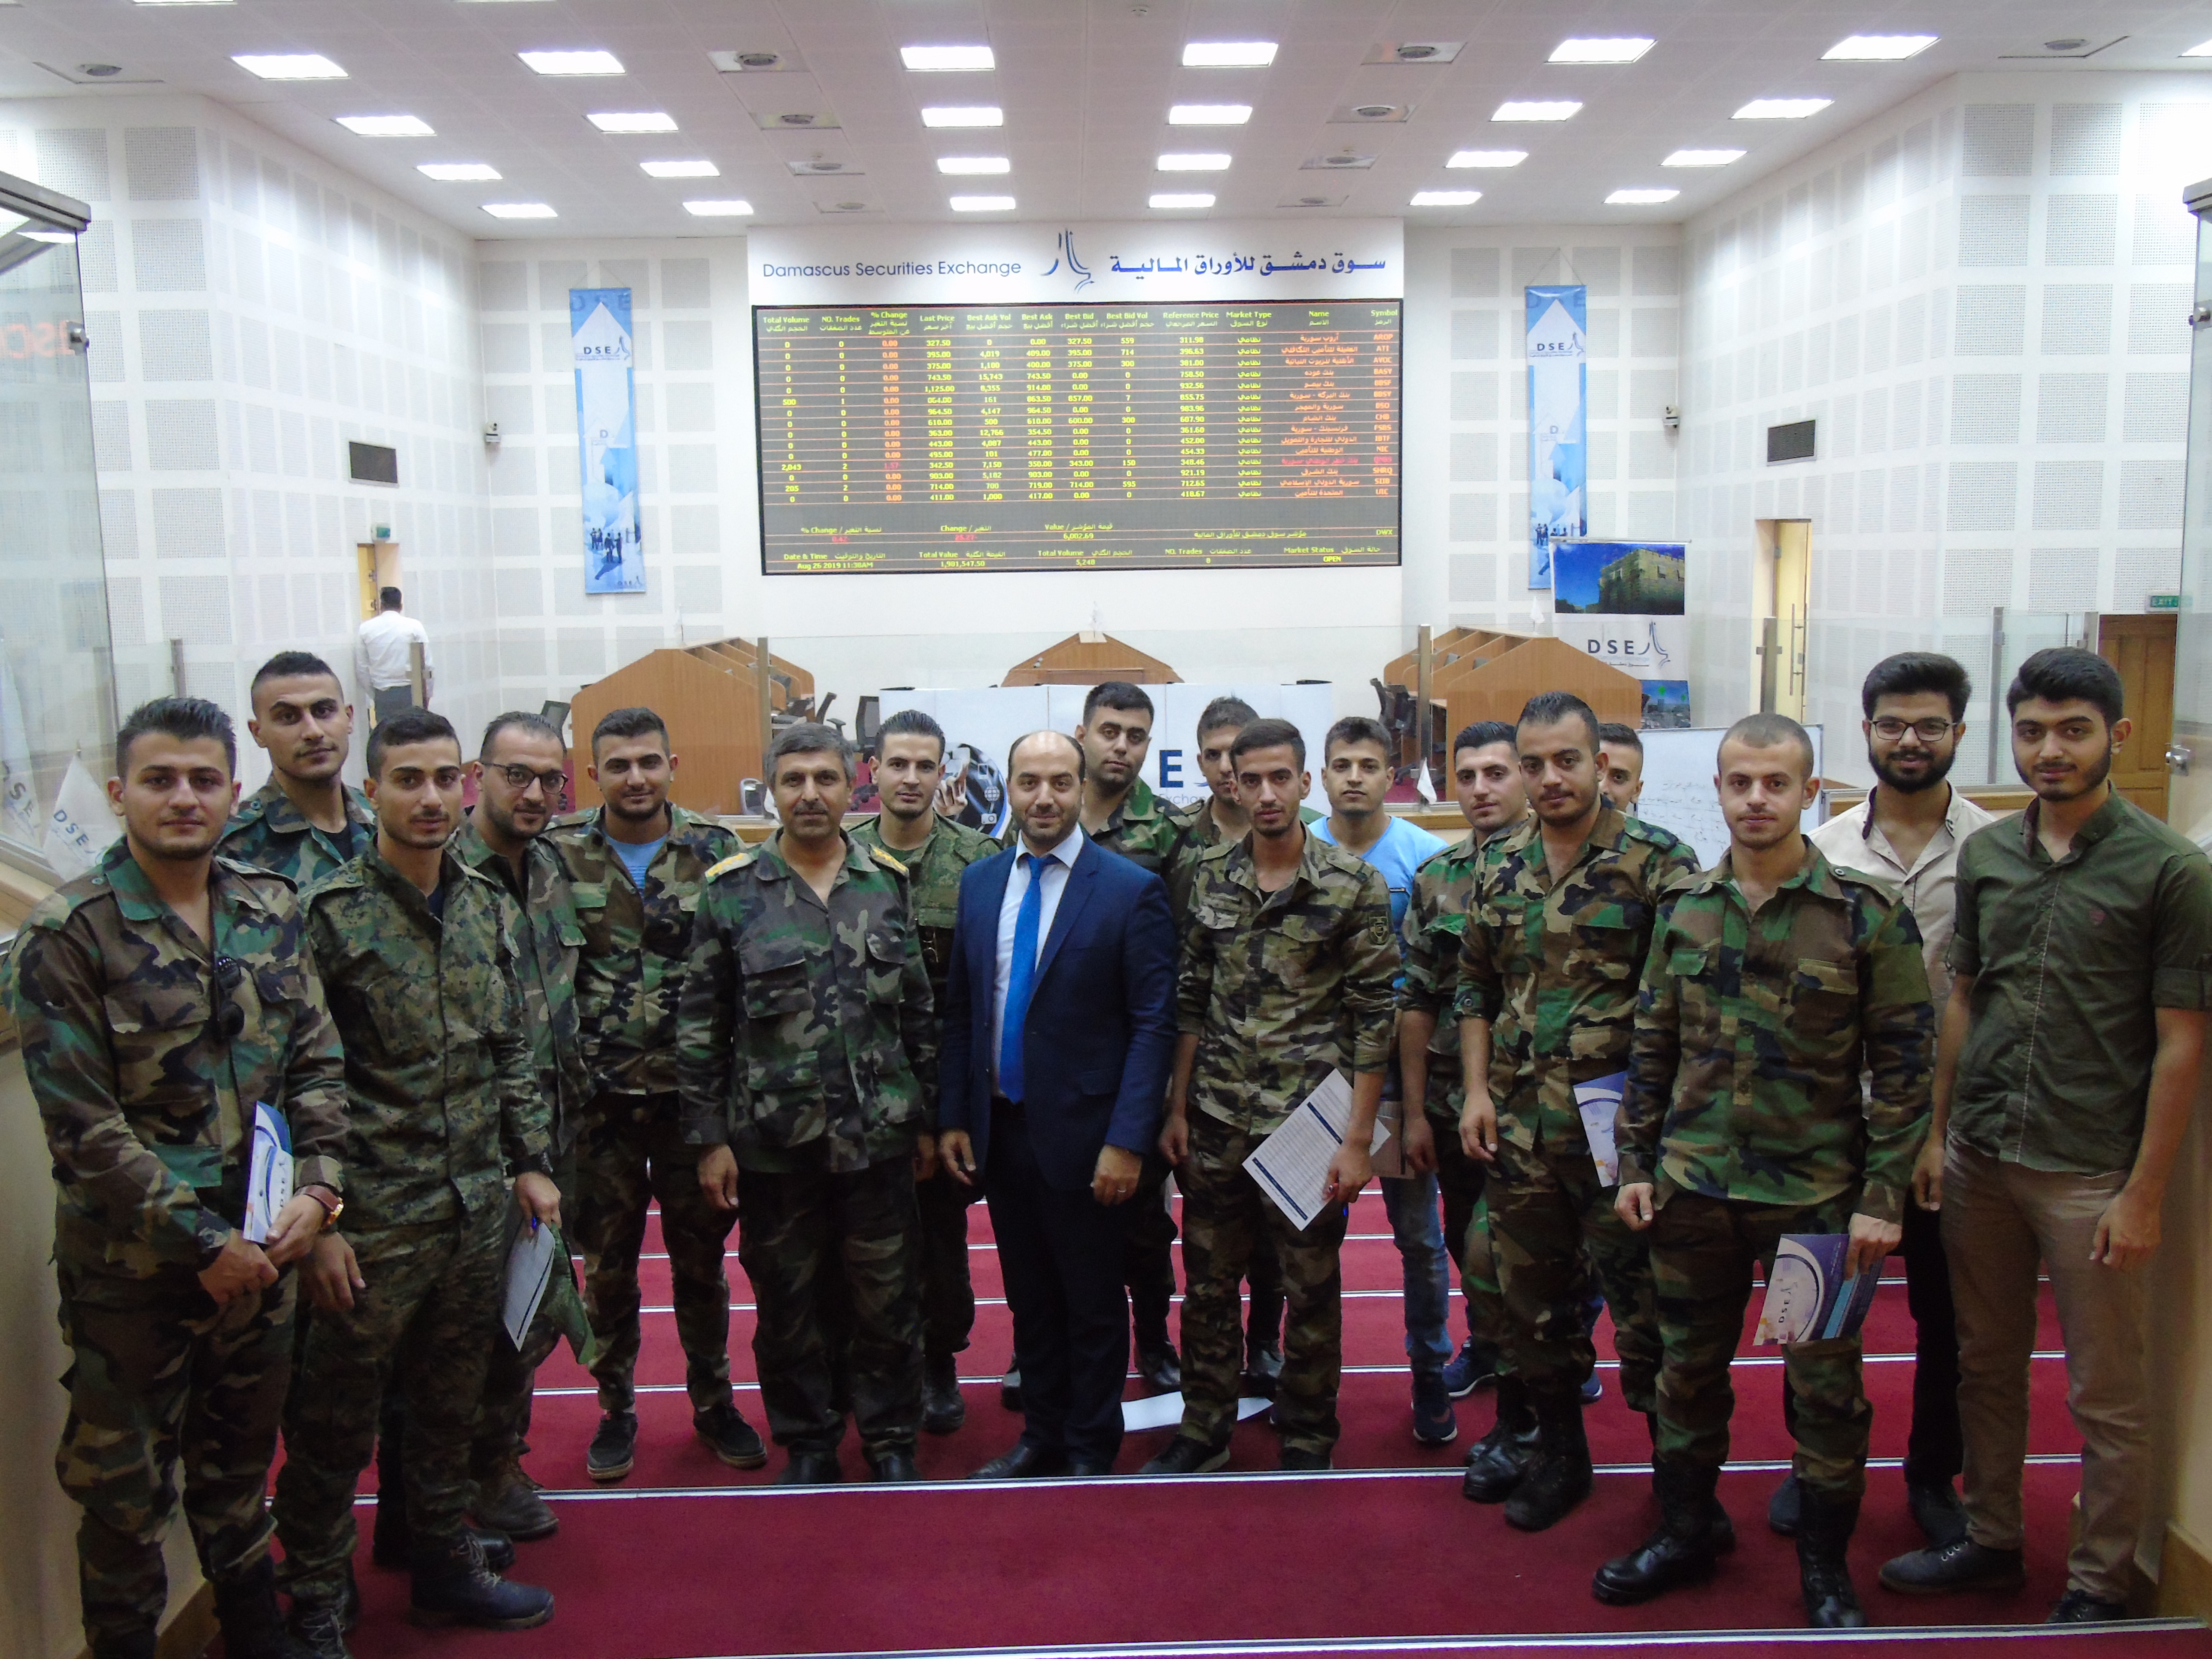 زيارة ميدانية من أكاديمية الأسد للهندسة العسكرية إلى مقر السوق